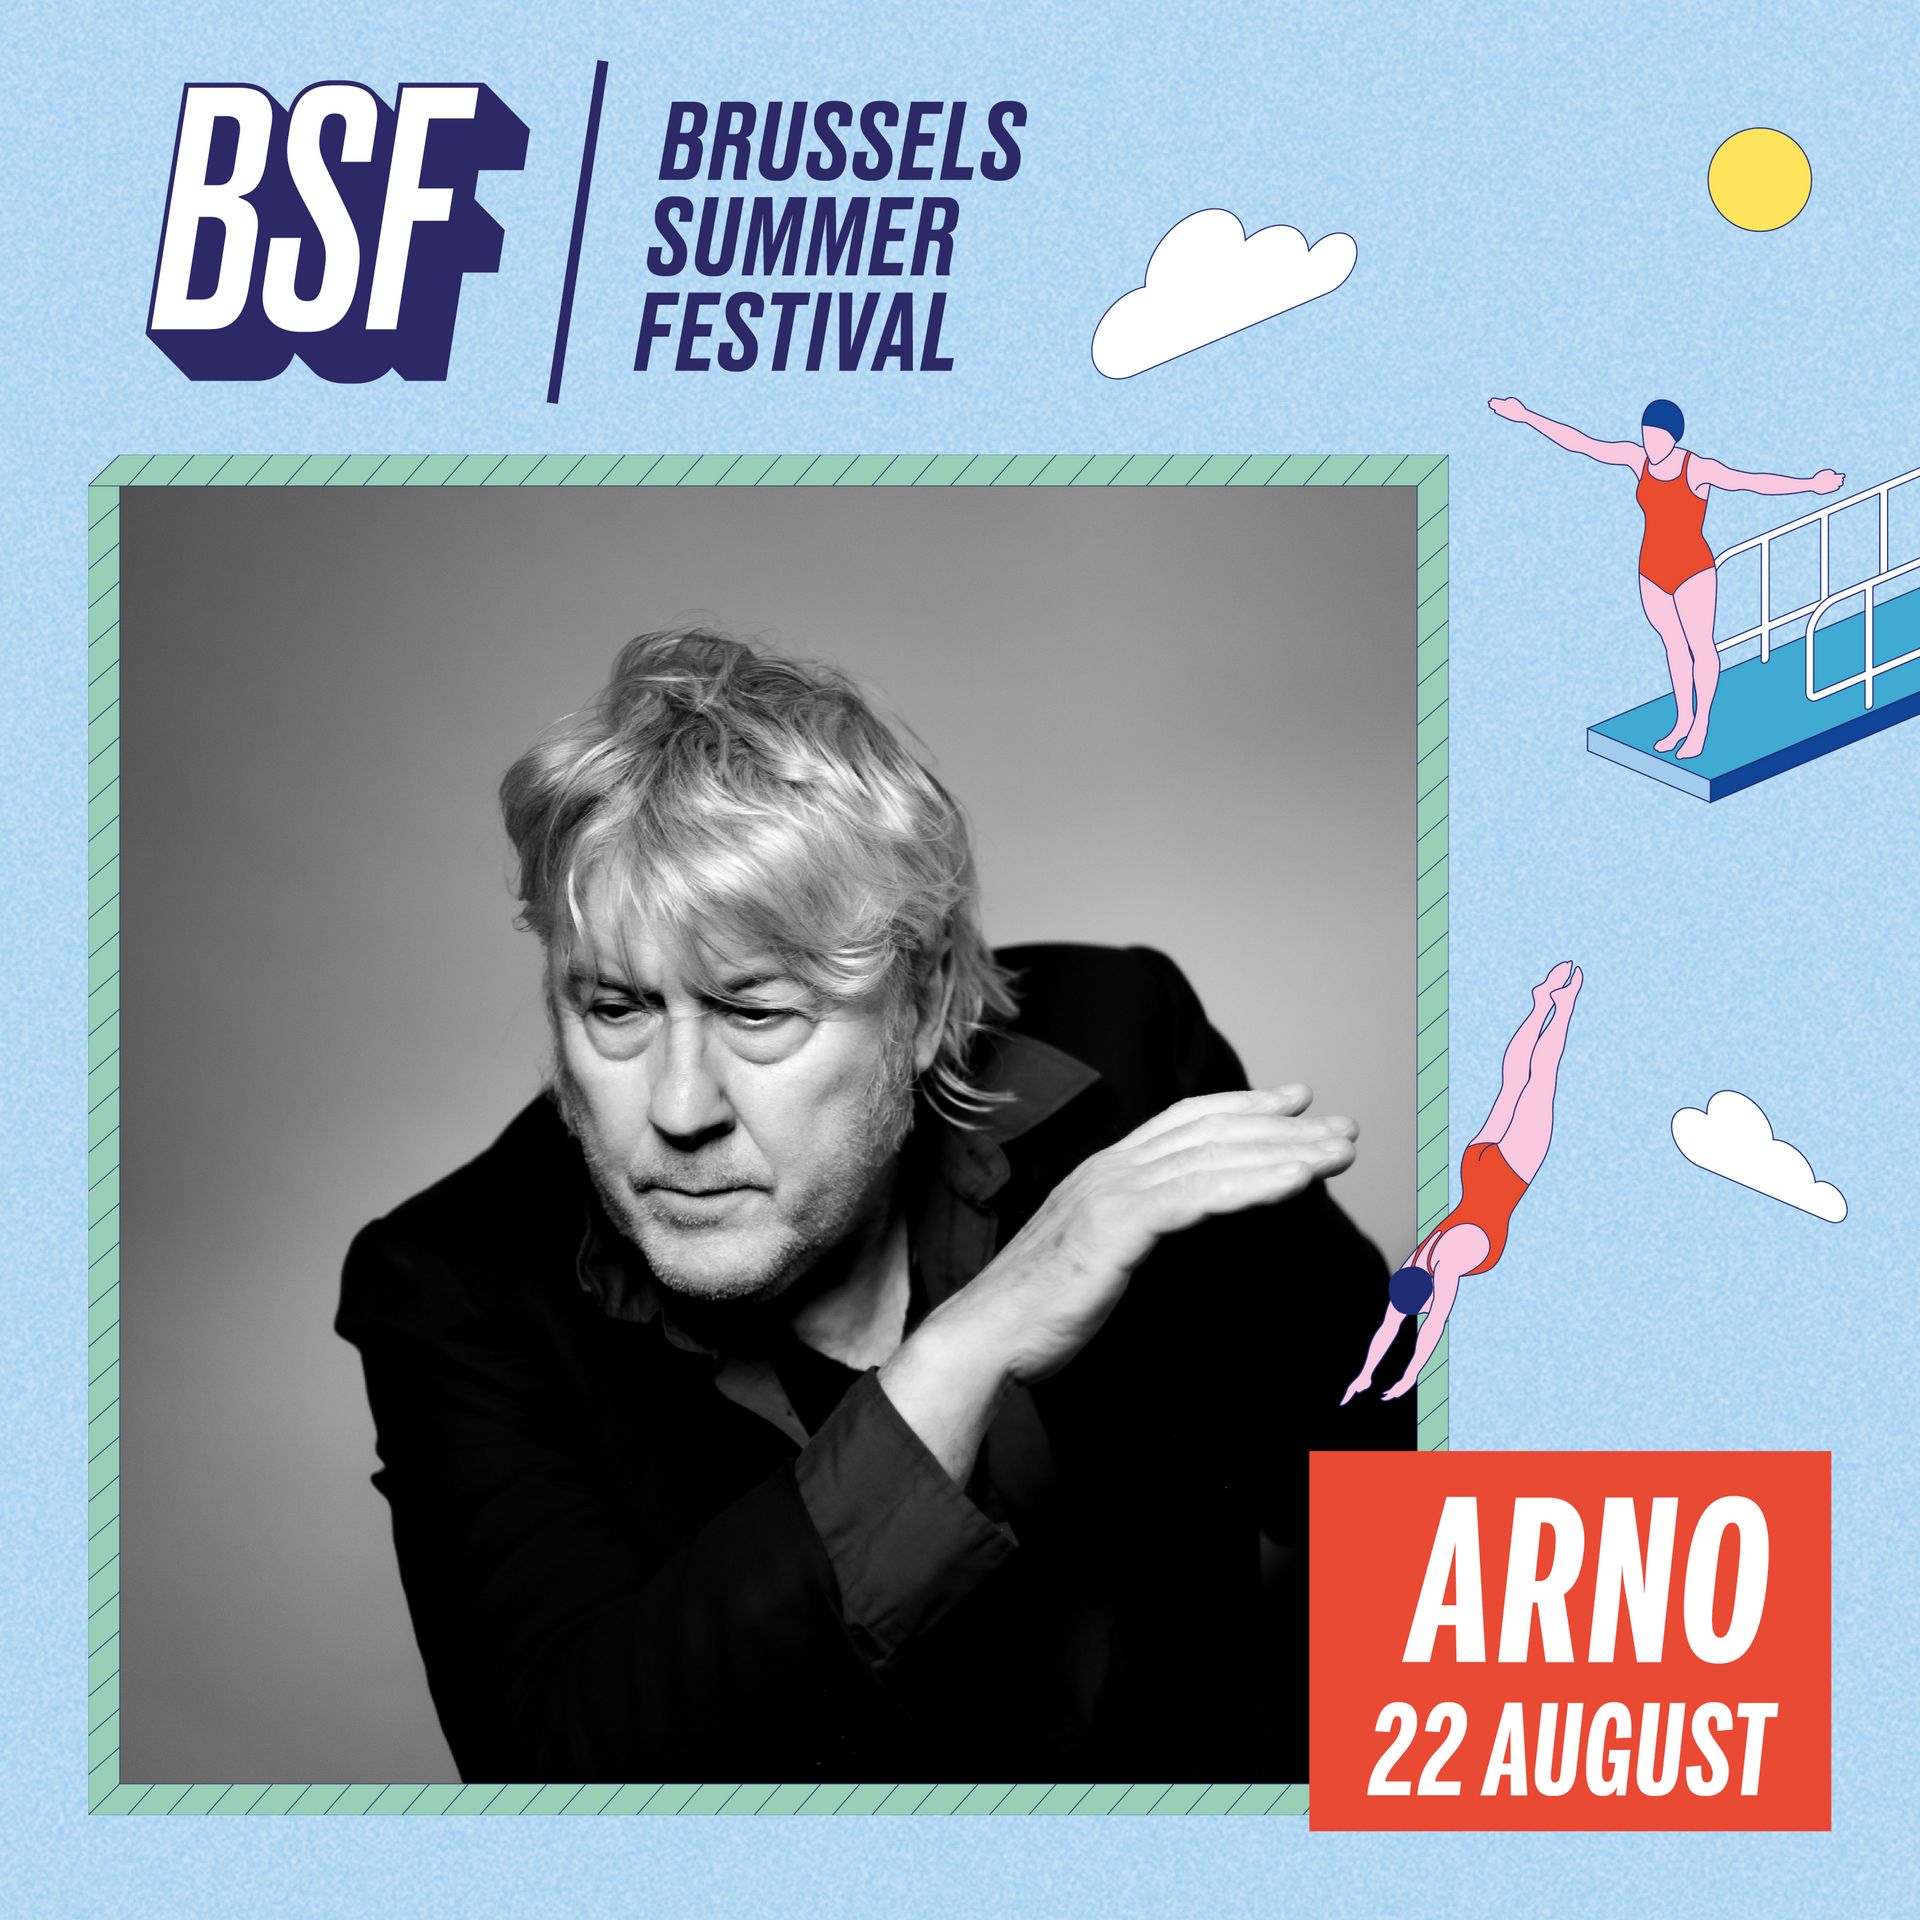 Arno présent au Brussels Summer Festival le 22 août prochain